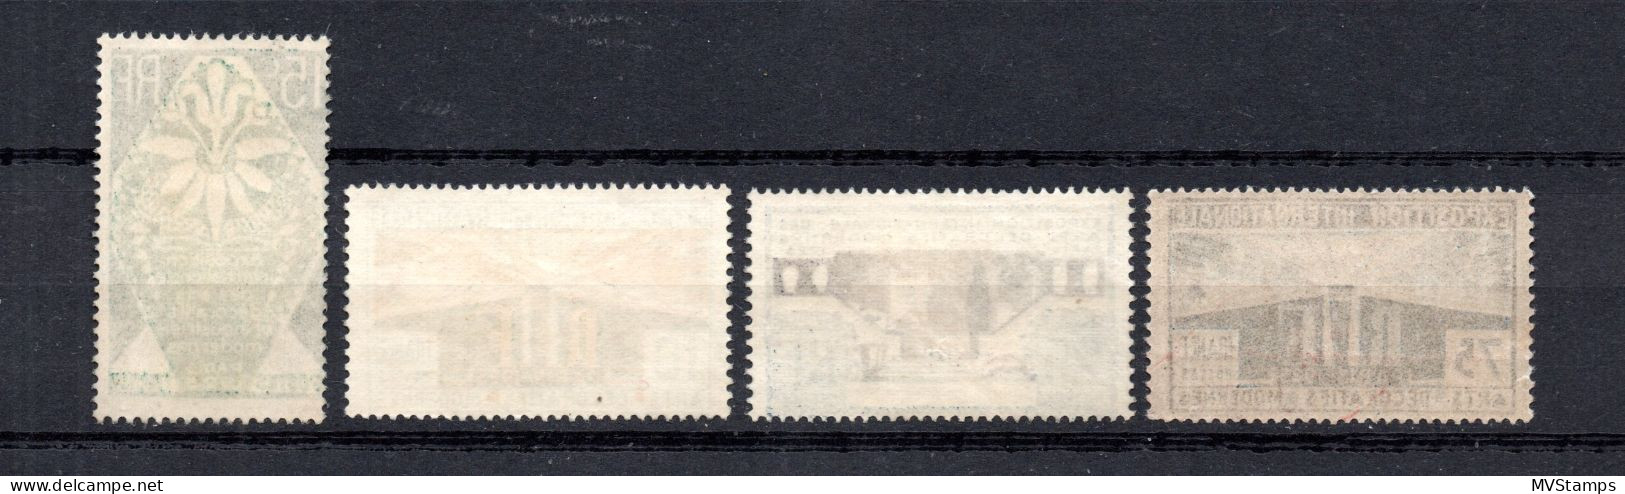 Frankreich 1925 Satz 177/80 Kunsewerbeausstellung Paris Postfrisch - Ungebraucht